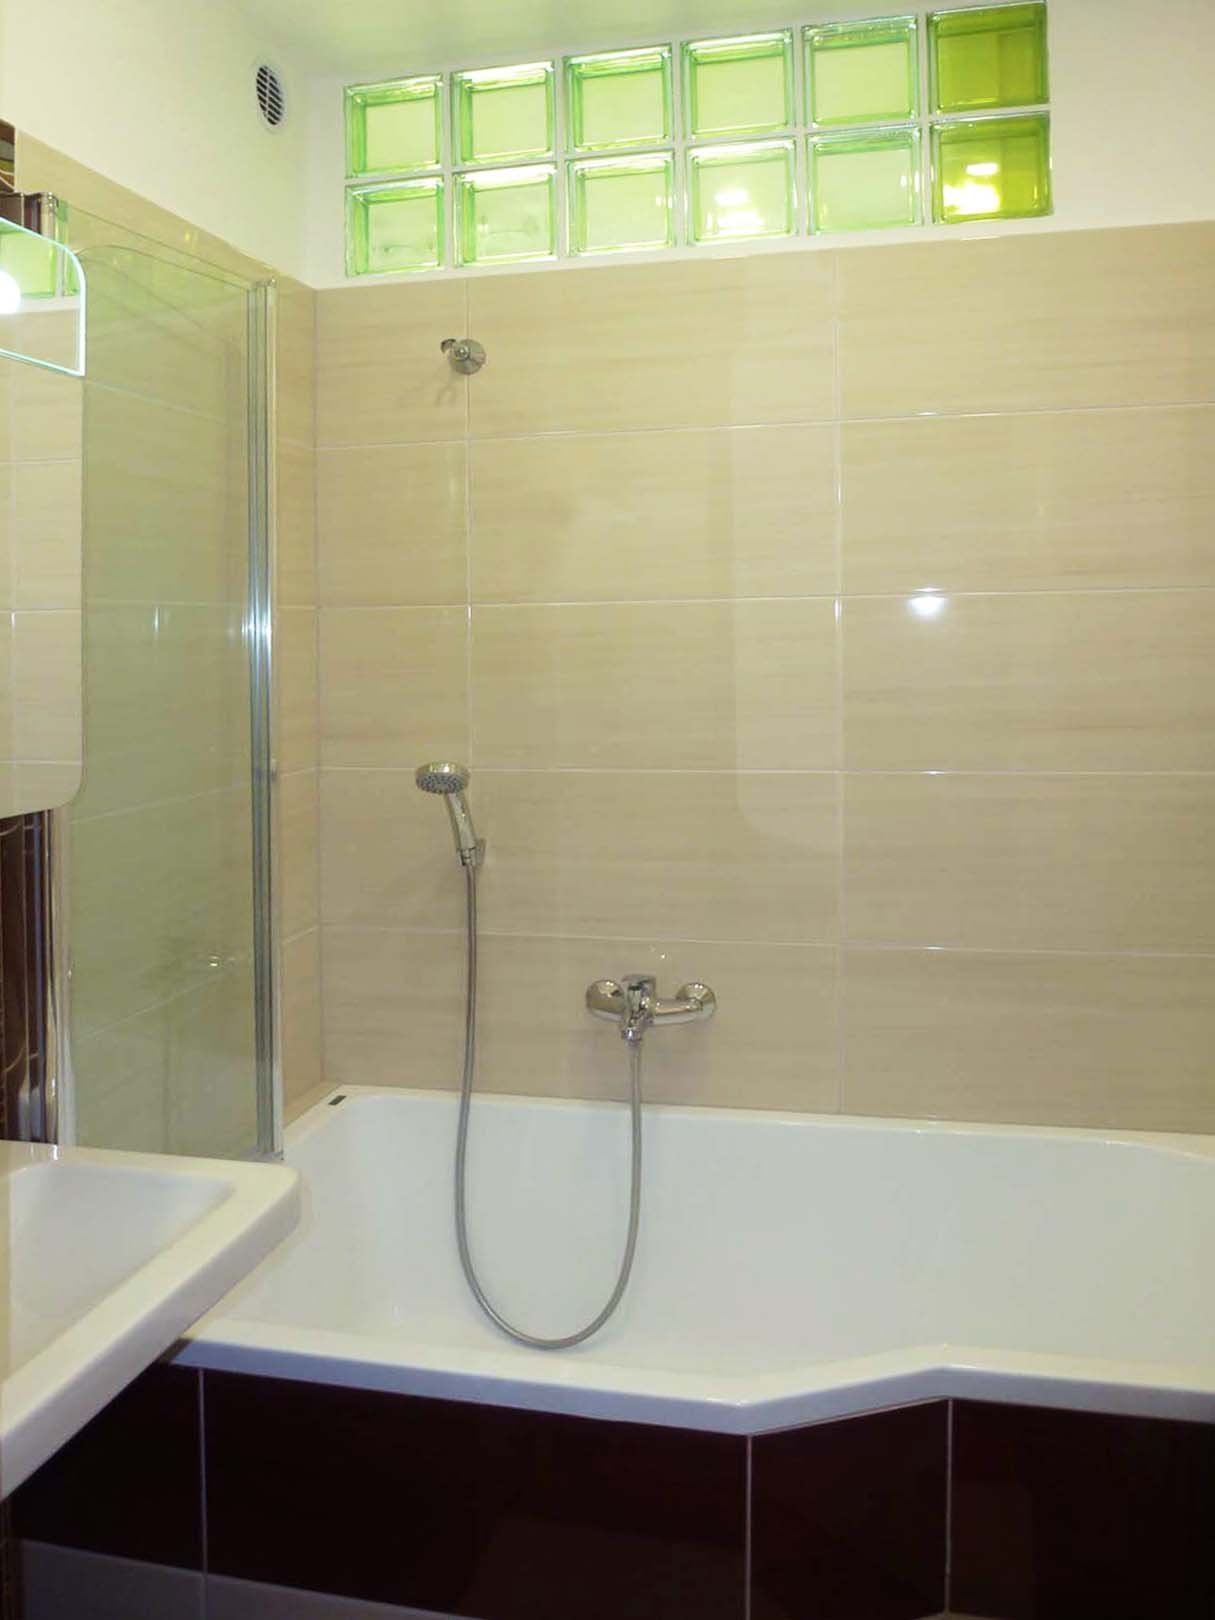 Rekonstrukce koupelny | Asymetrická vana je prostorově úsporná a zároveň dostatečně pohodlná pro koupání i sprchování | Koupelny-svitavy.cz